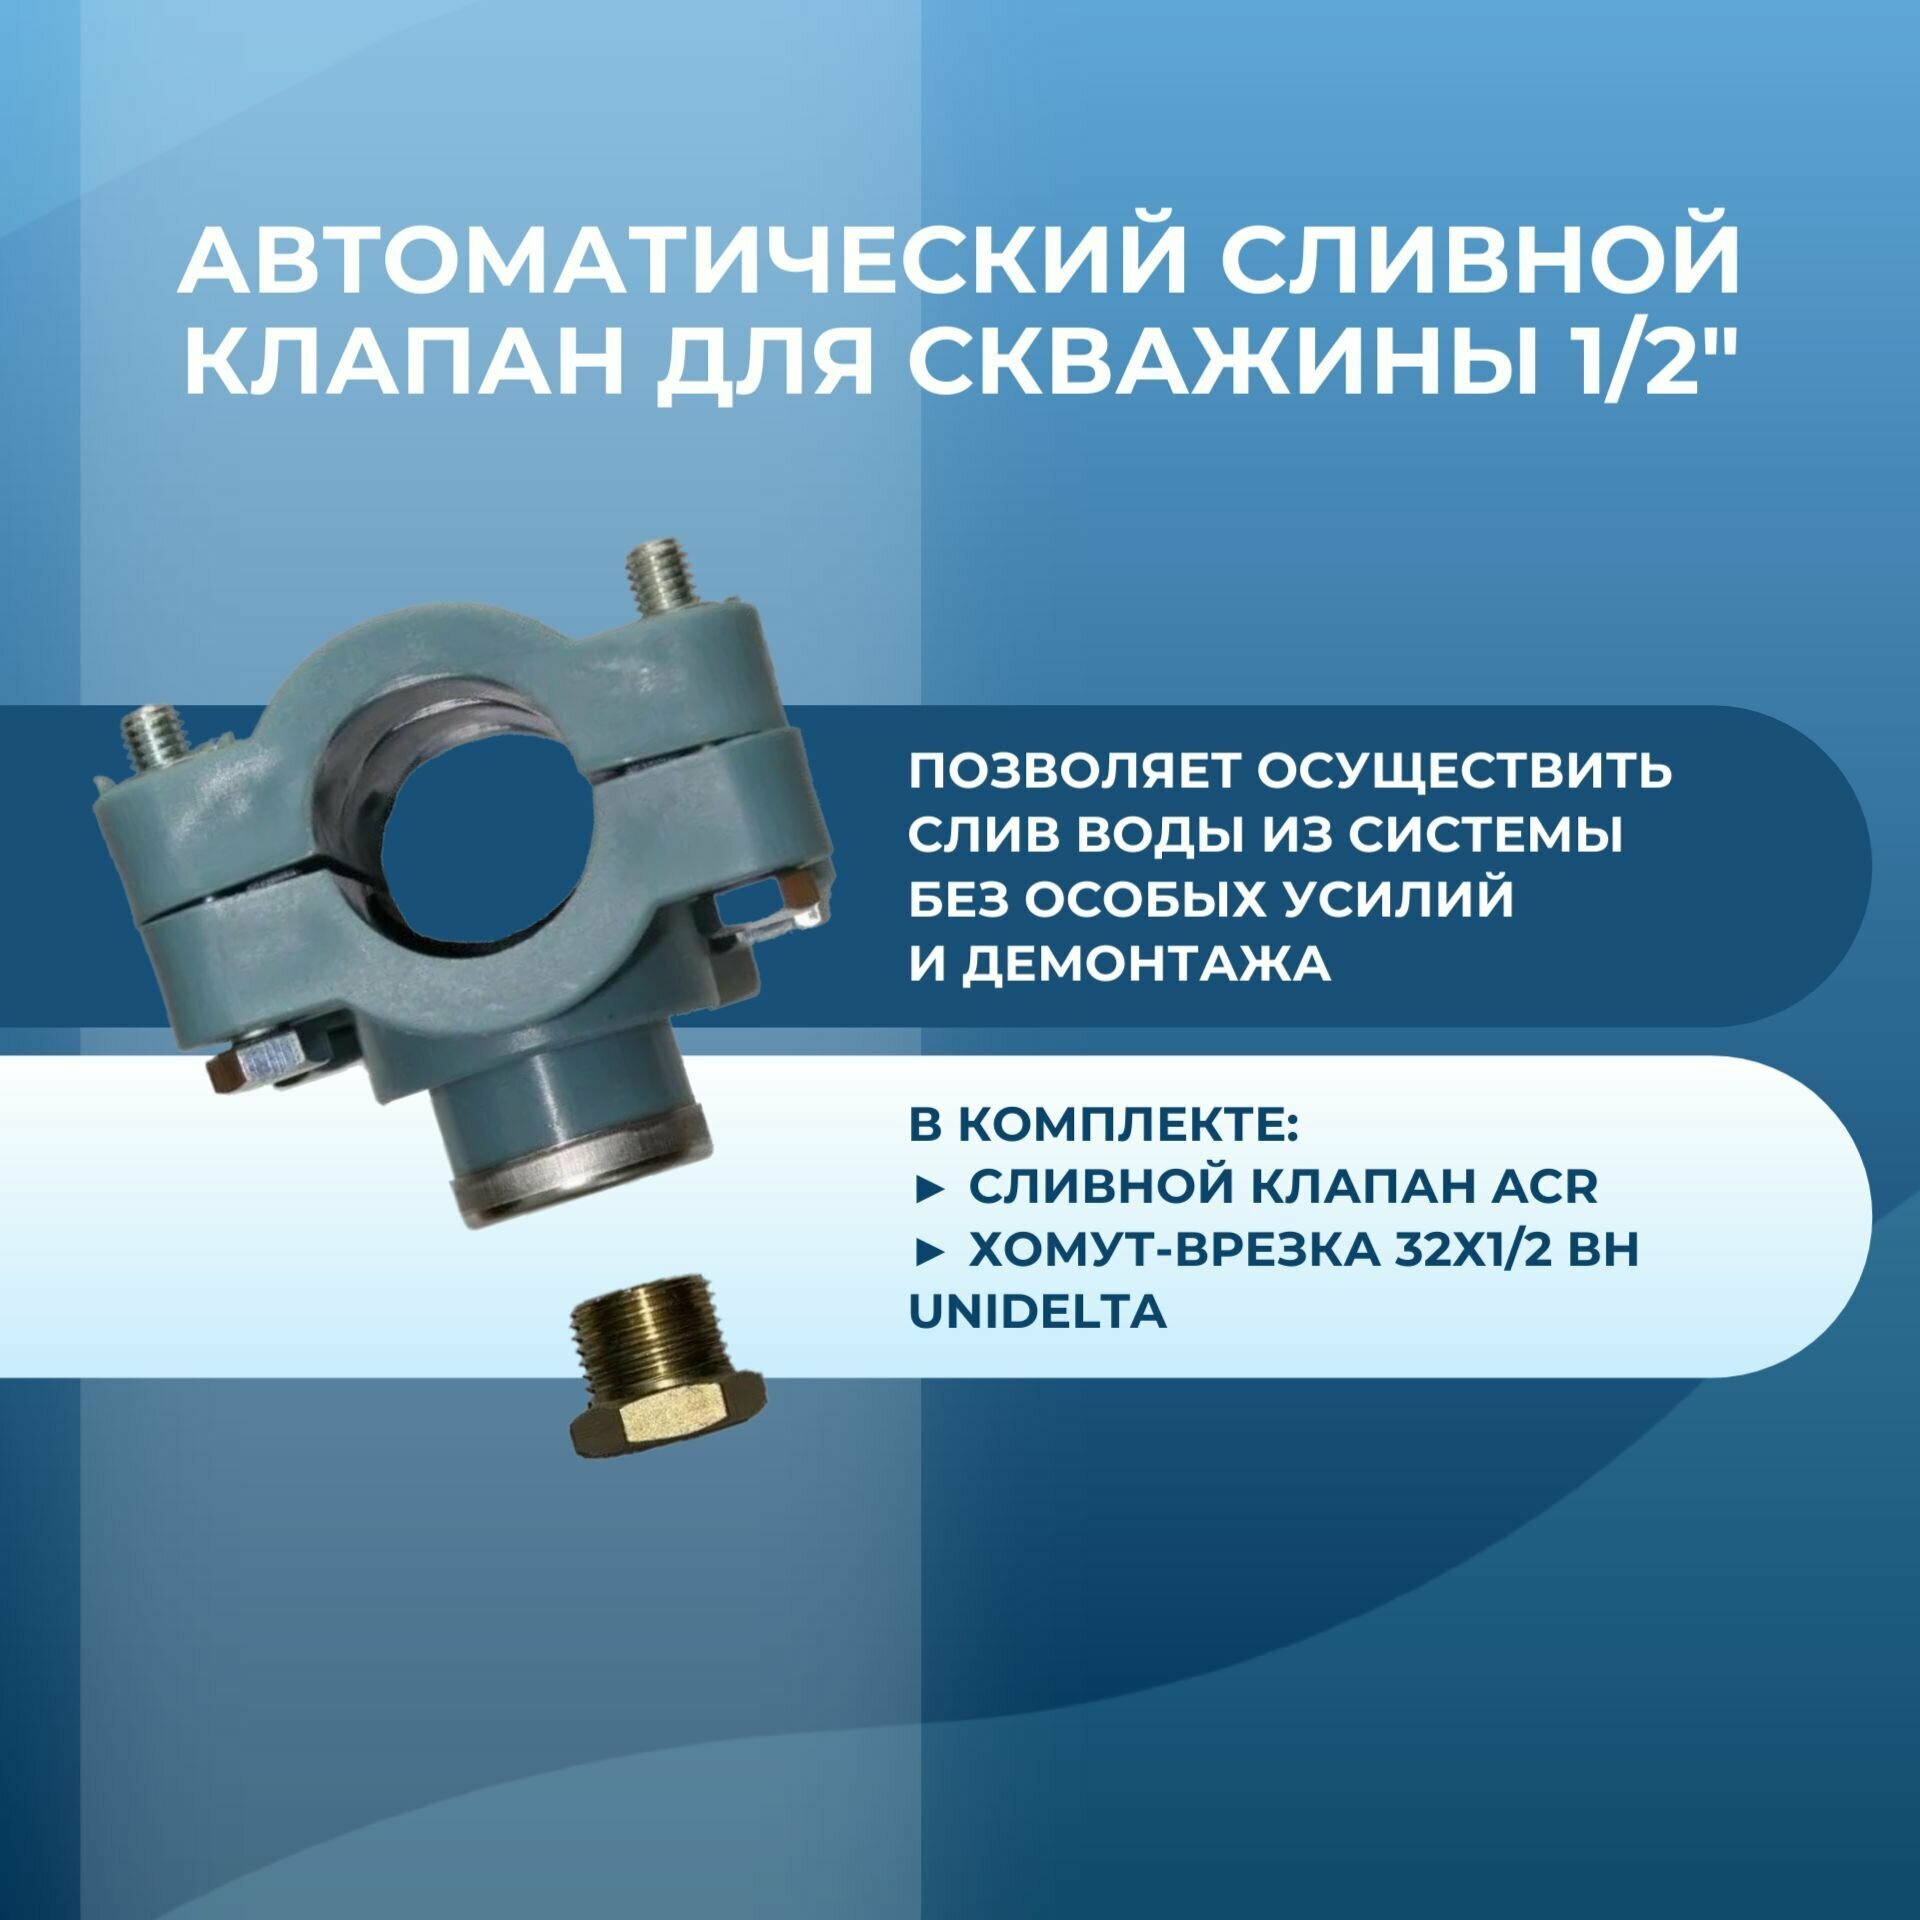 Автоматический сливной клапан для скважины 1/2" комплект